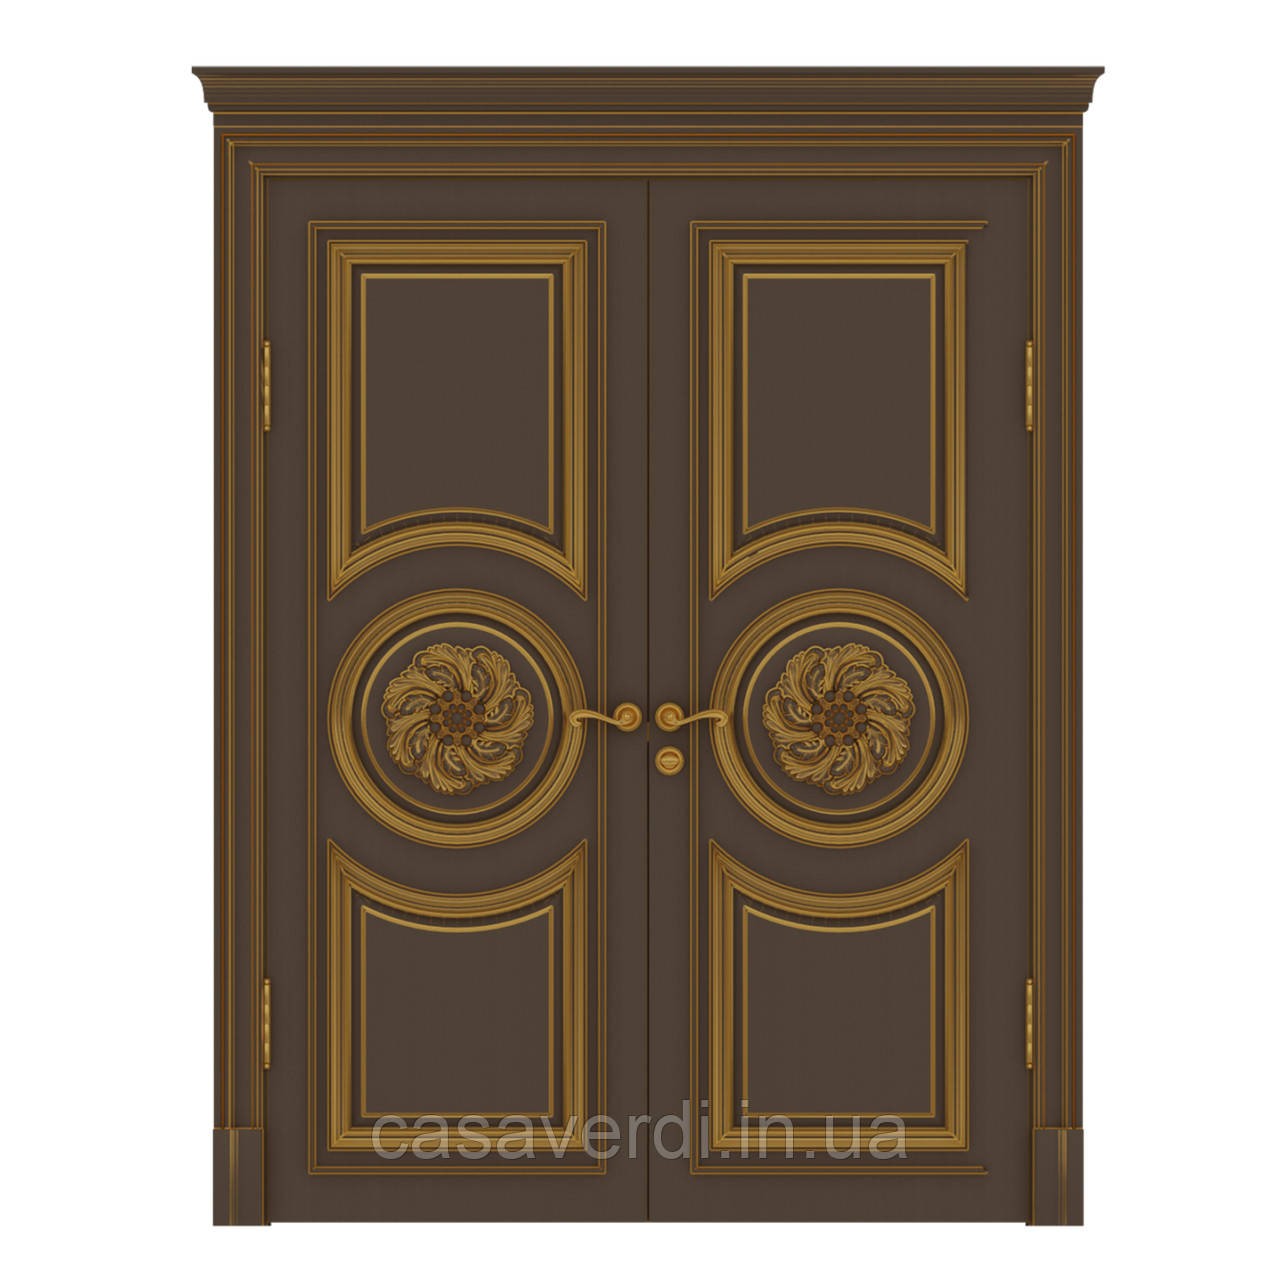 Міжкімнатні двері Casa Verdi Napoli 10 подвійна орні з масиву ясена